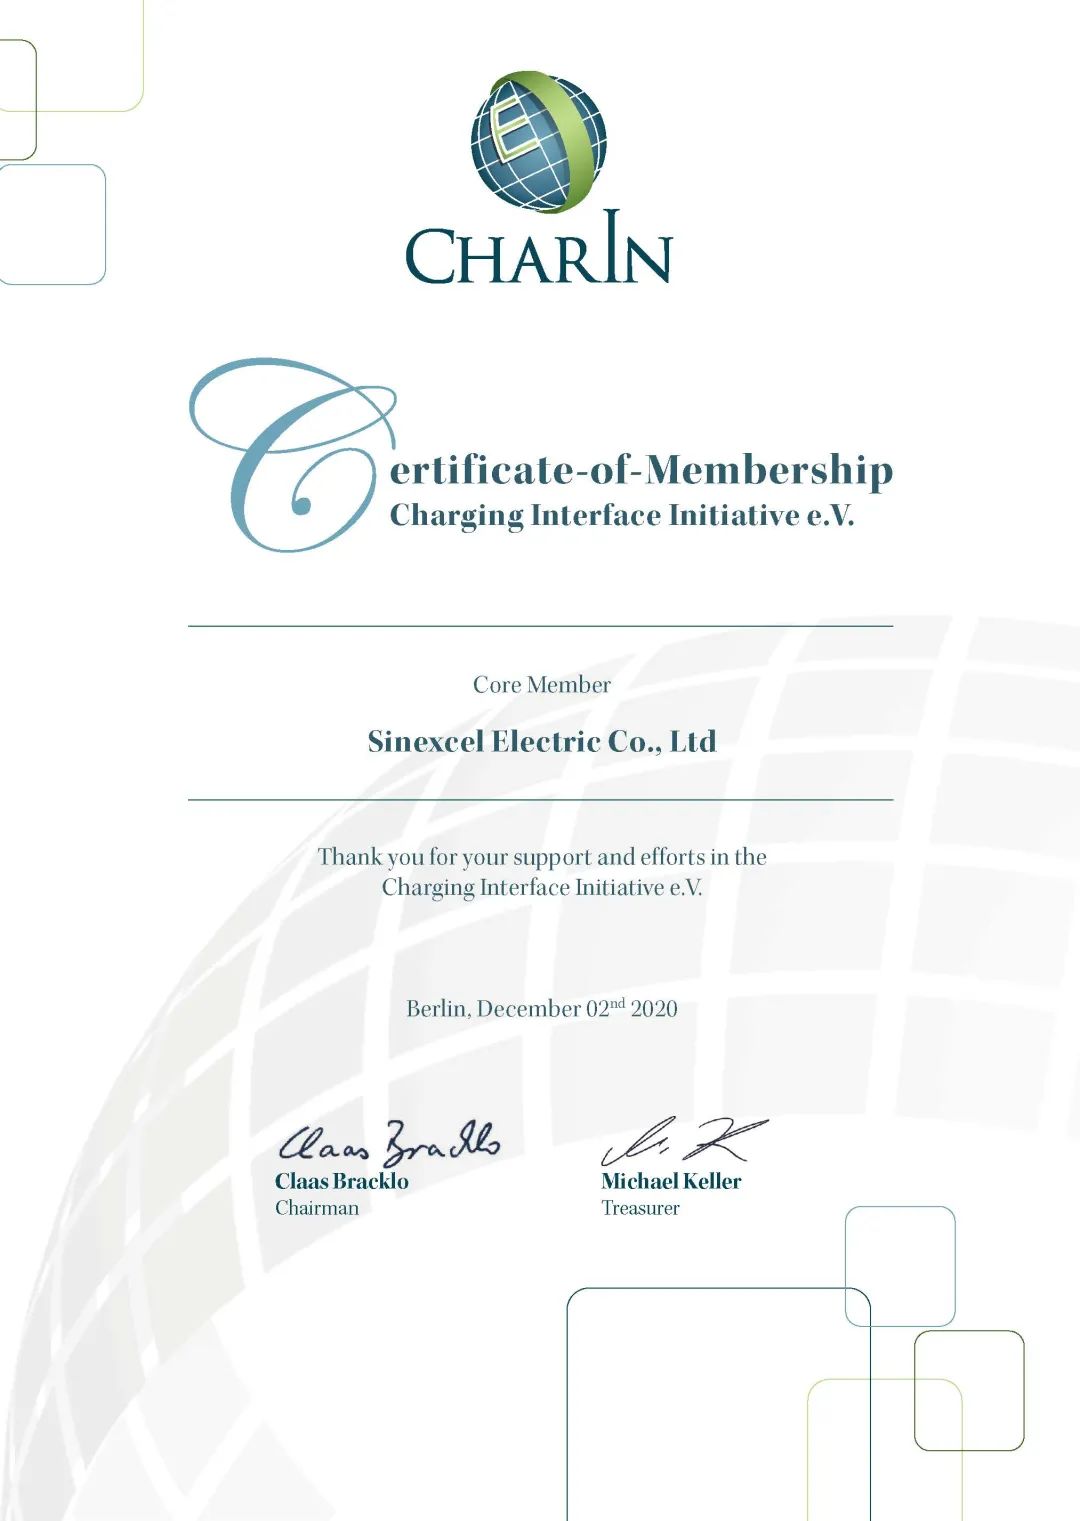 全球顶尖Charln充电协会会员证